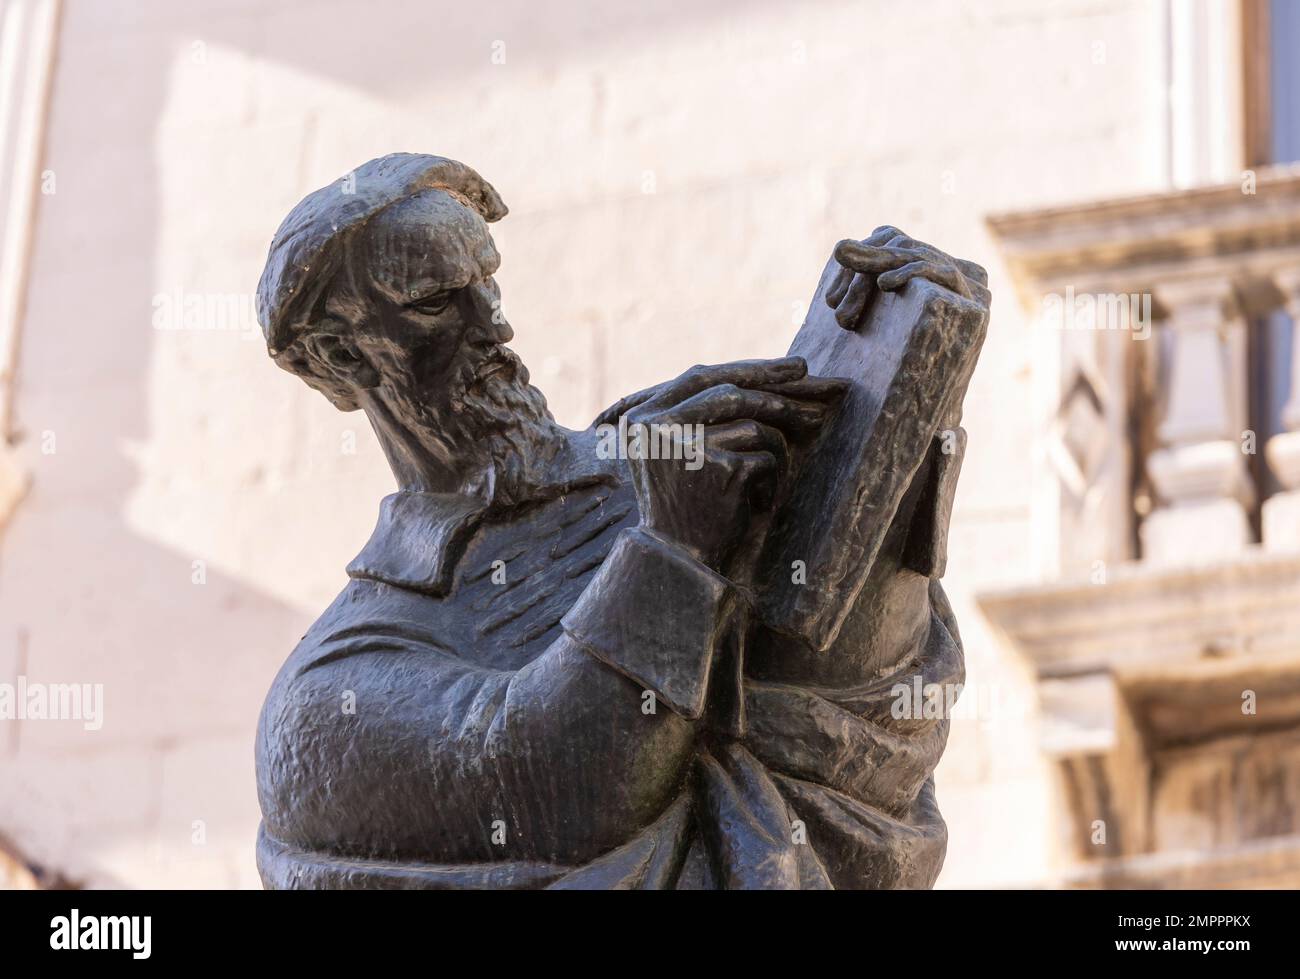 SPLIT, CROACIA, EUROPA - Estatua de Marko Marulic, poeta croata, en el casco antiguo de Split. Foto de stock